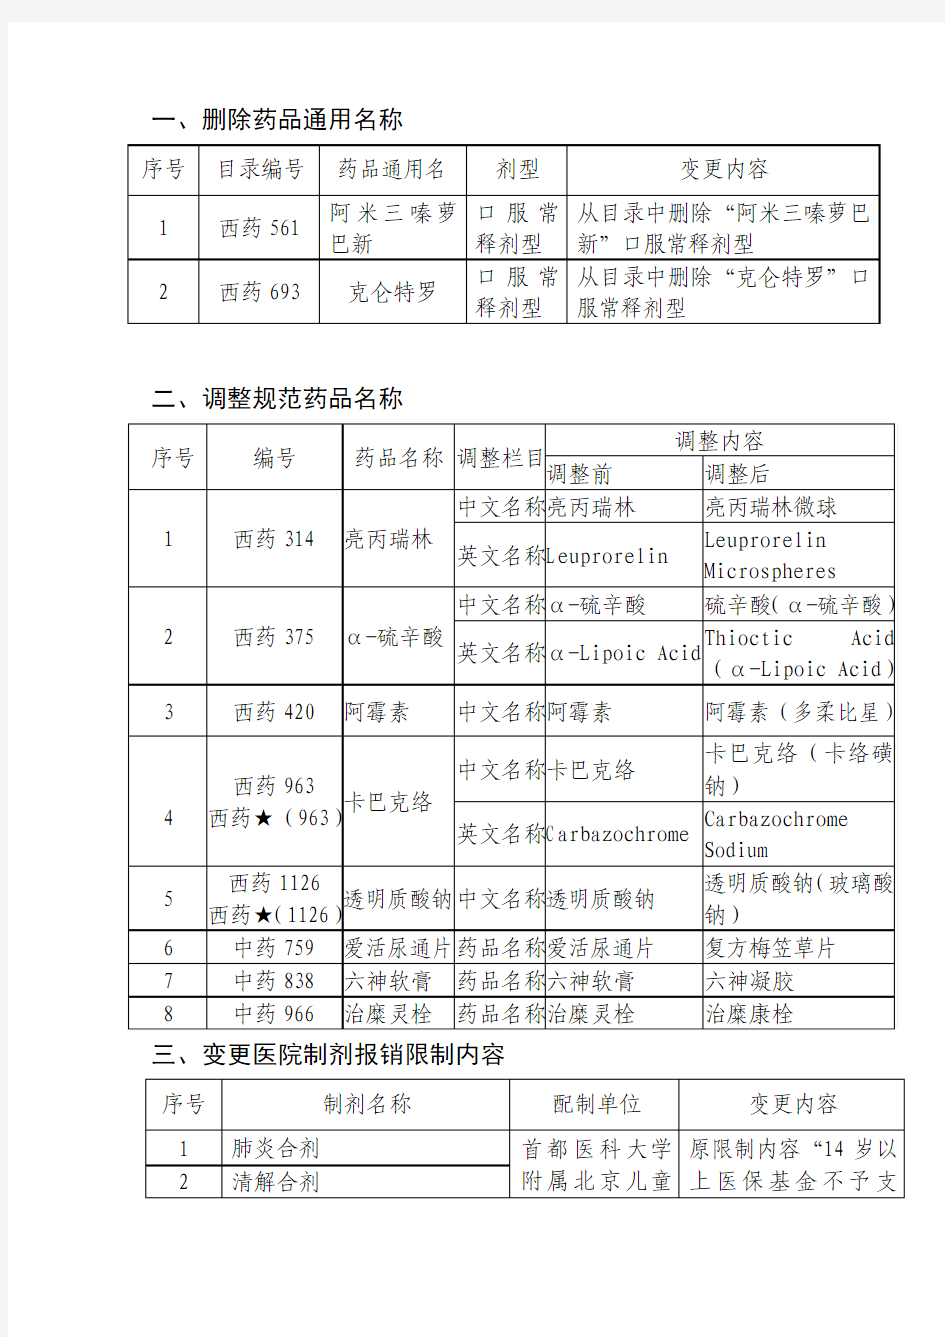 《北京市基本医疗保险药品、医院制剂报销范围变更内容(六)》的通知